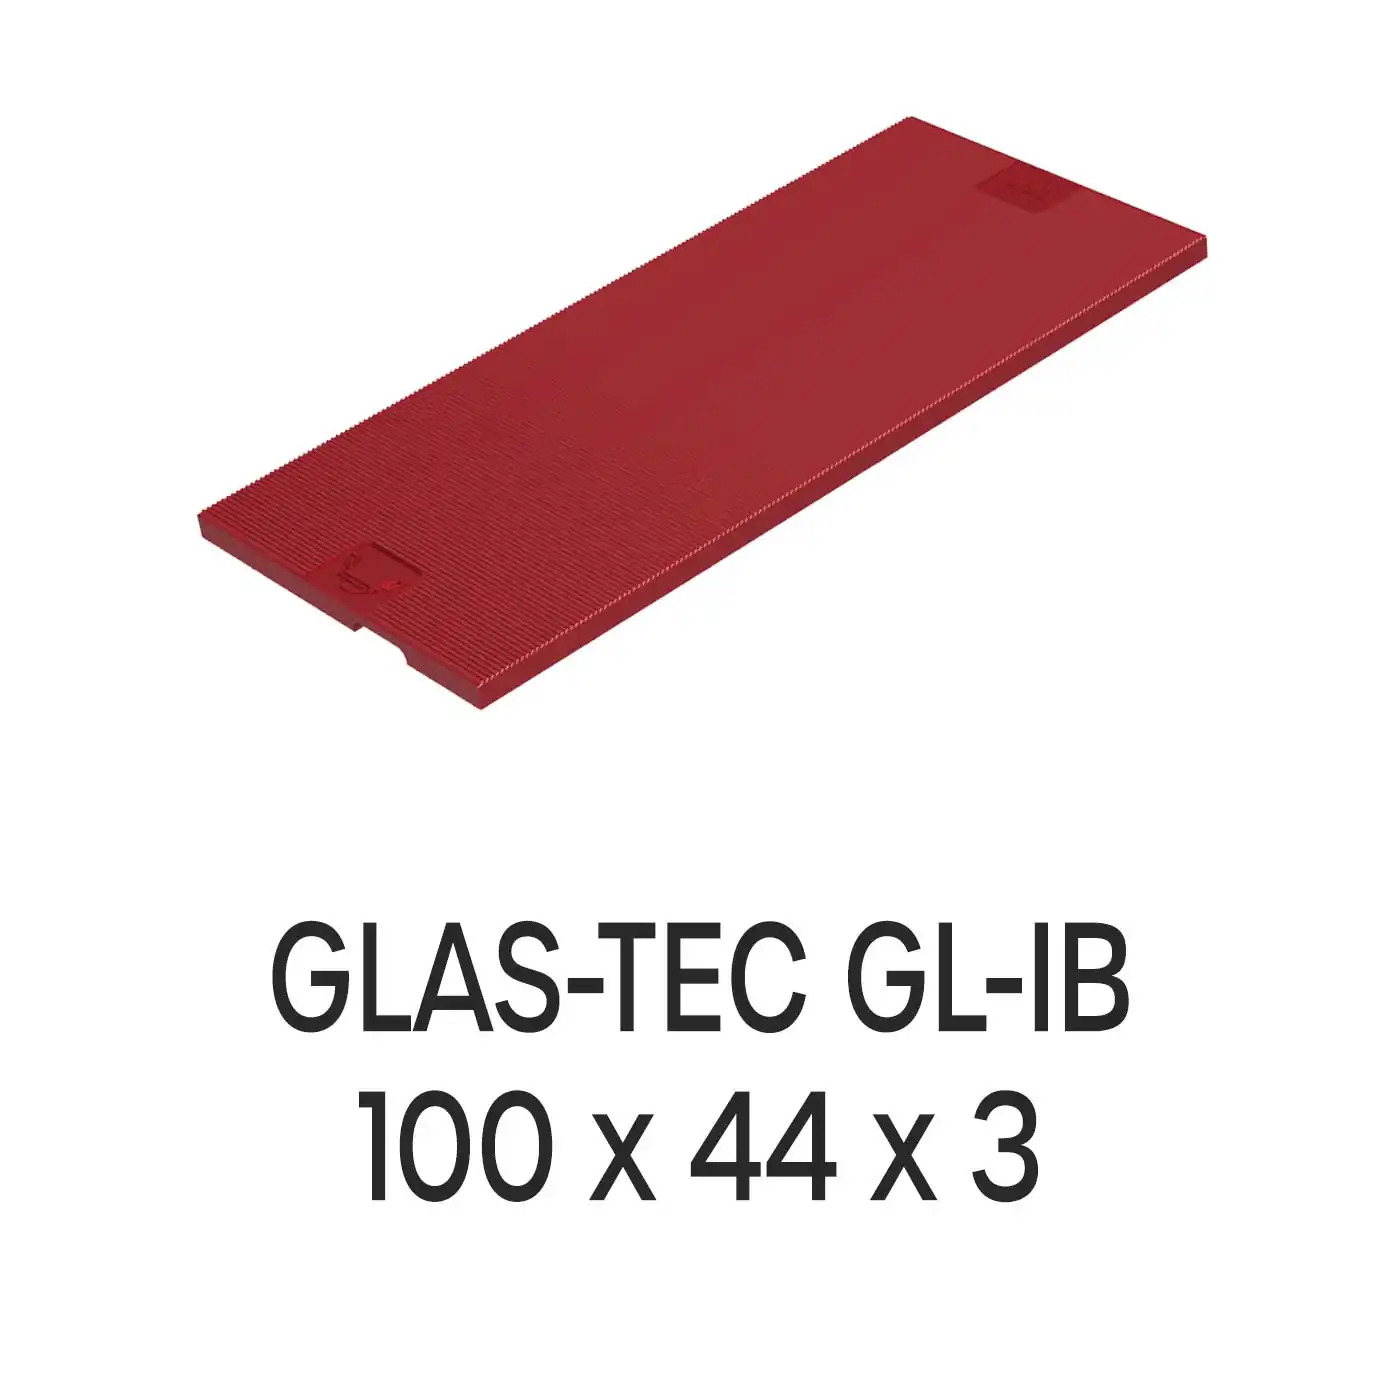 Roto Verglasungsklotz GLAS-TEC GL-IB, 100 x 44 x 3 mm, schwarz, 500 Stück